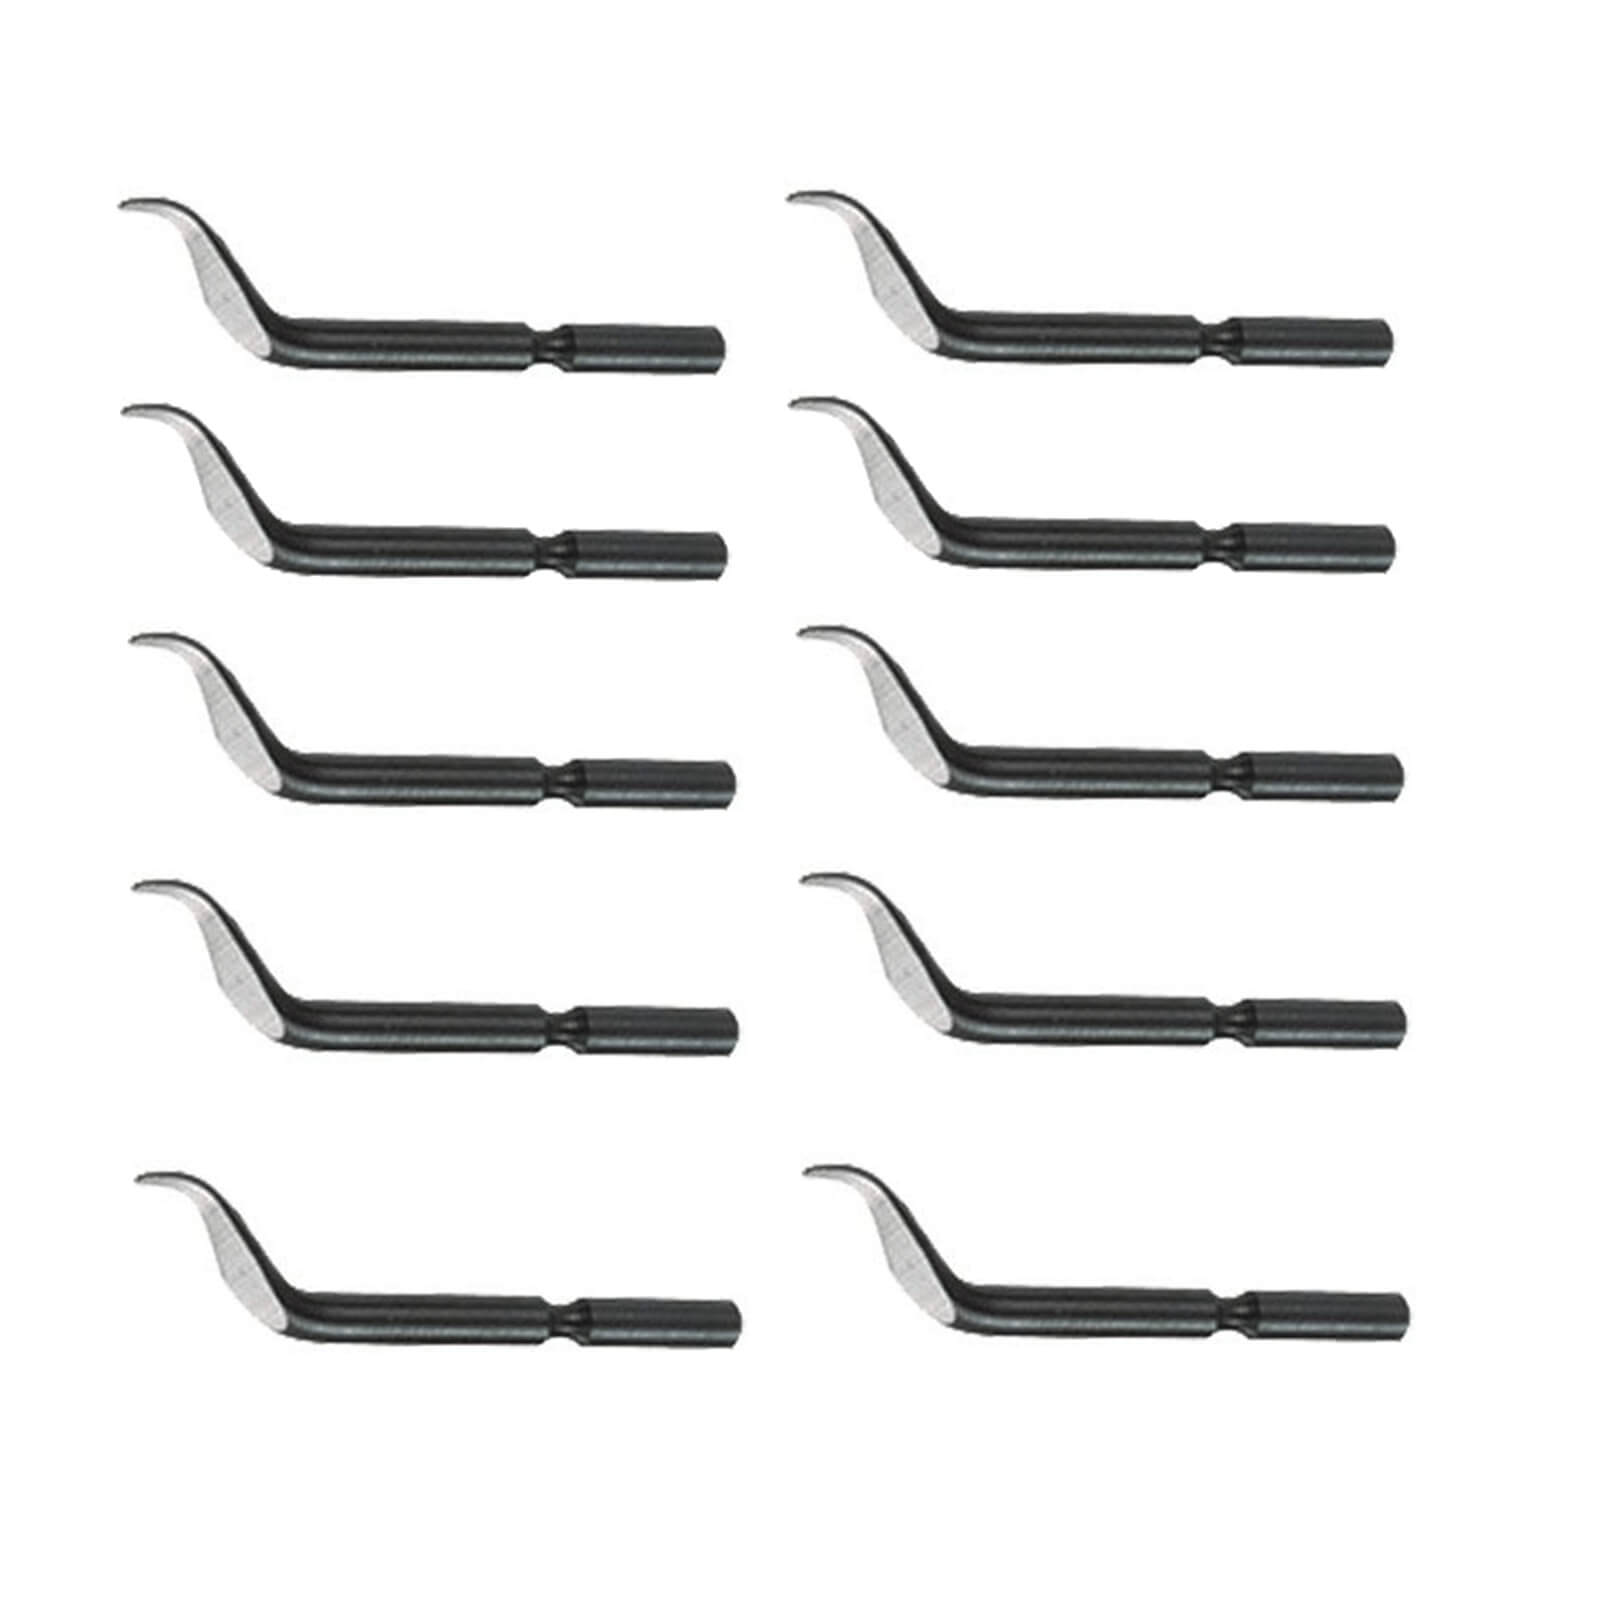 Shaviv E111 Thin Nosed Deburr Blades For Deburring Tool Pack of 10 